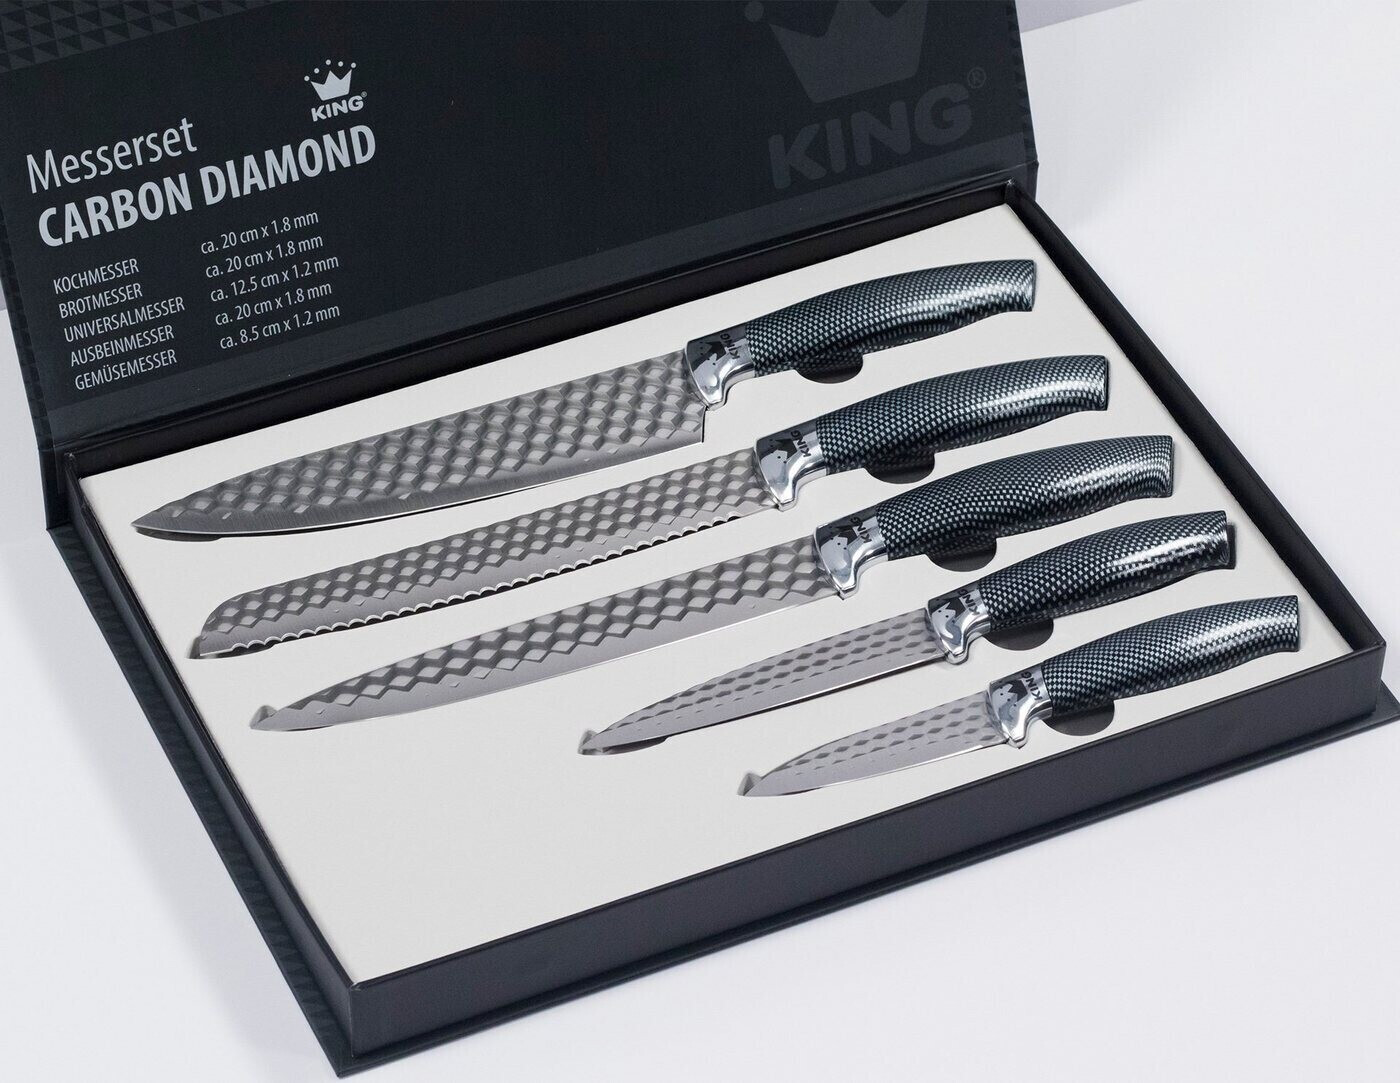 22,99 Carbon King ab Diamond 5-teilig Messer-Set Preisvergleich | bei €